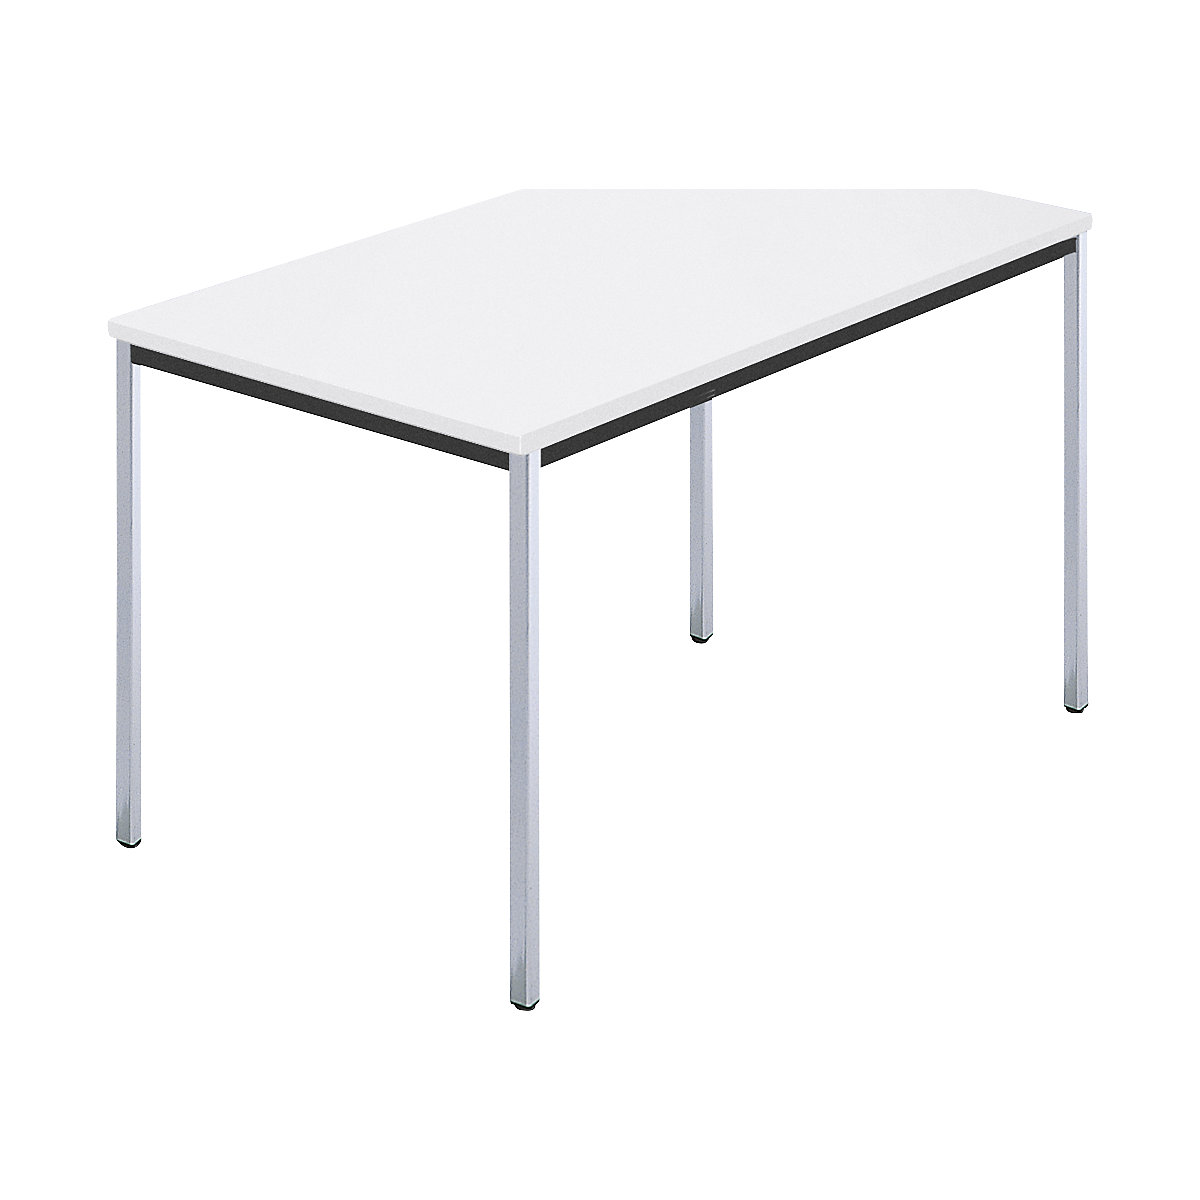 Obdélníkový stůl, čtyřhranná trubka pochromovaná, š x h 1200 x 800 mm, bílá-5